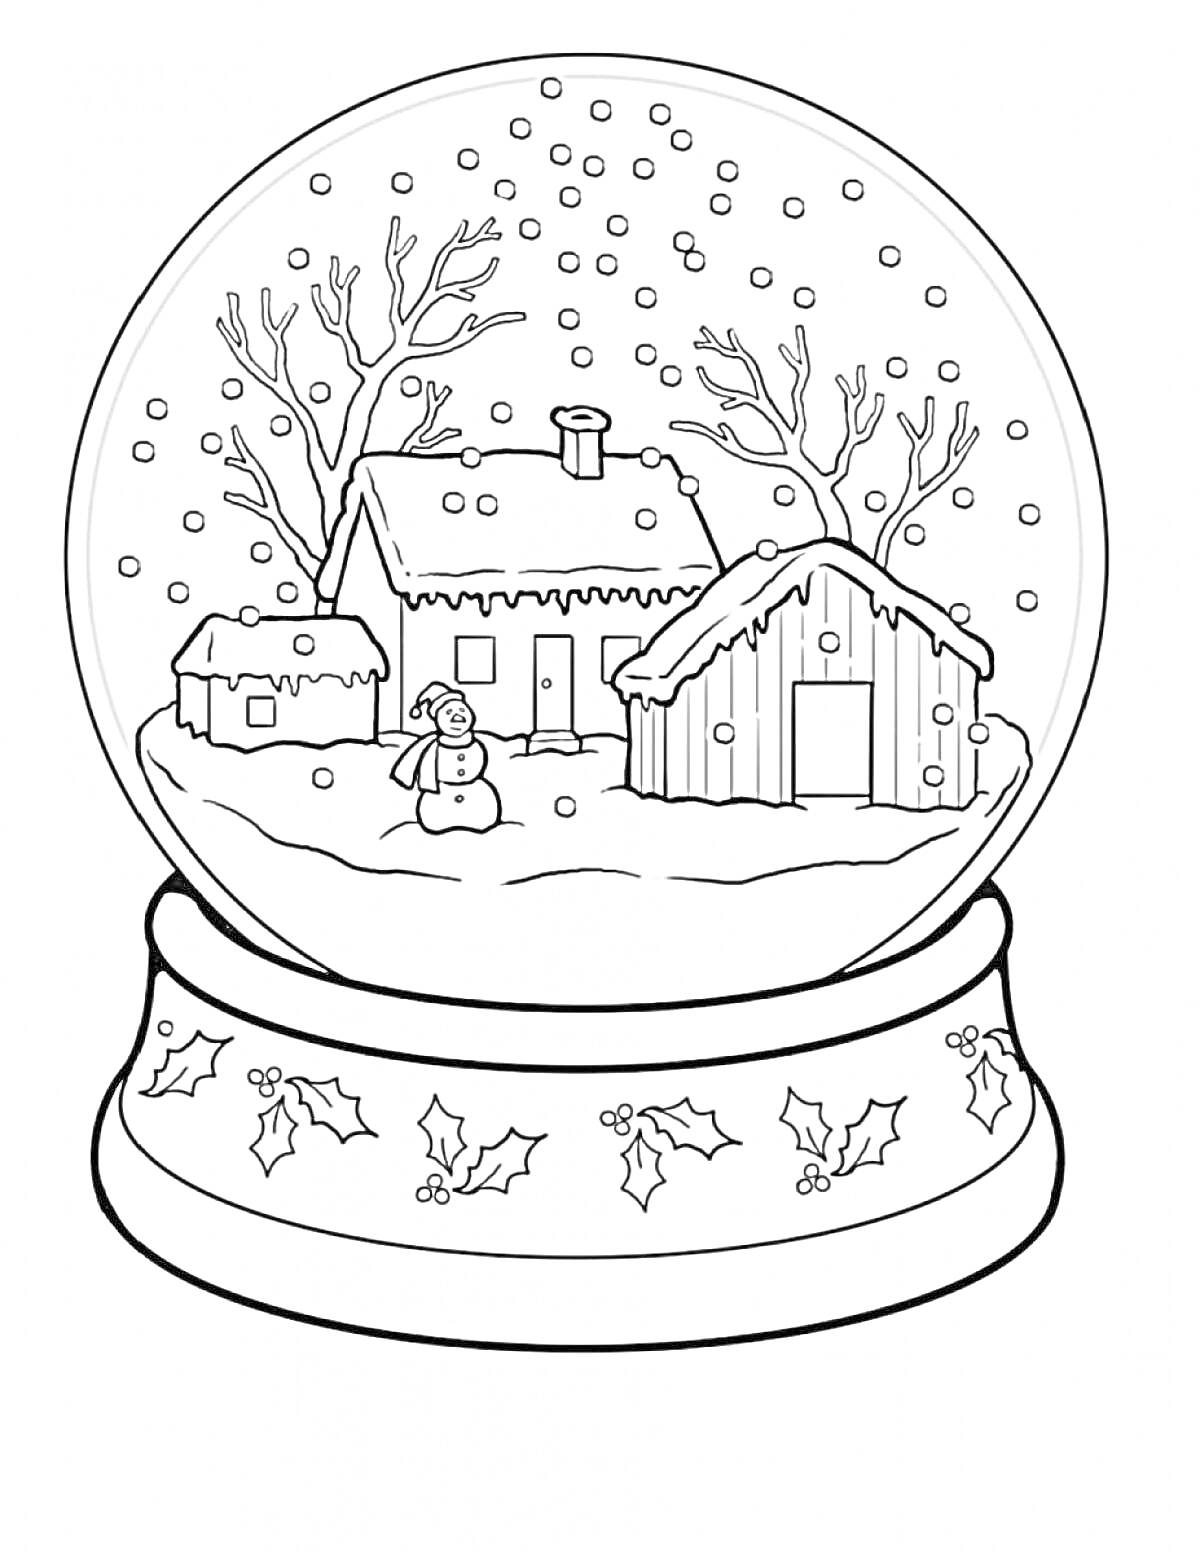 Раскраска Снежный шар с домом, сараем, снеговиком и зимними деревьями